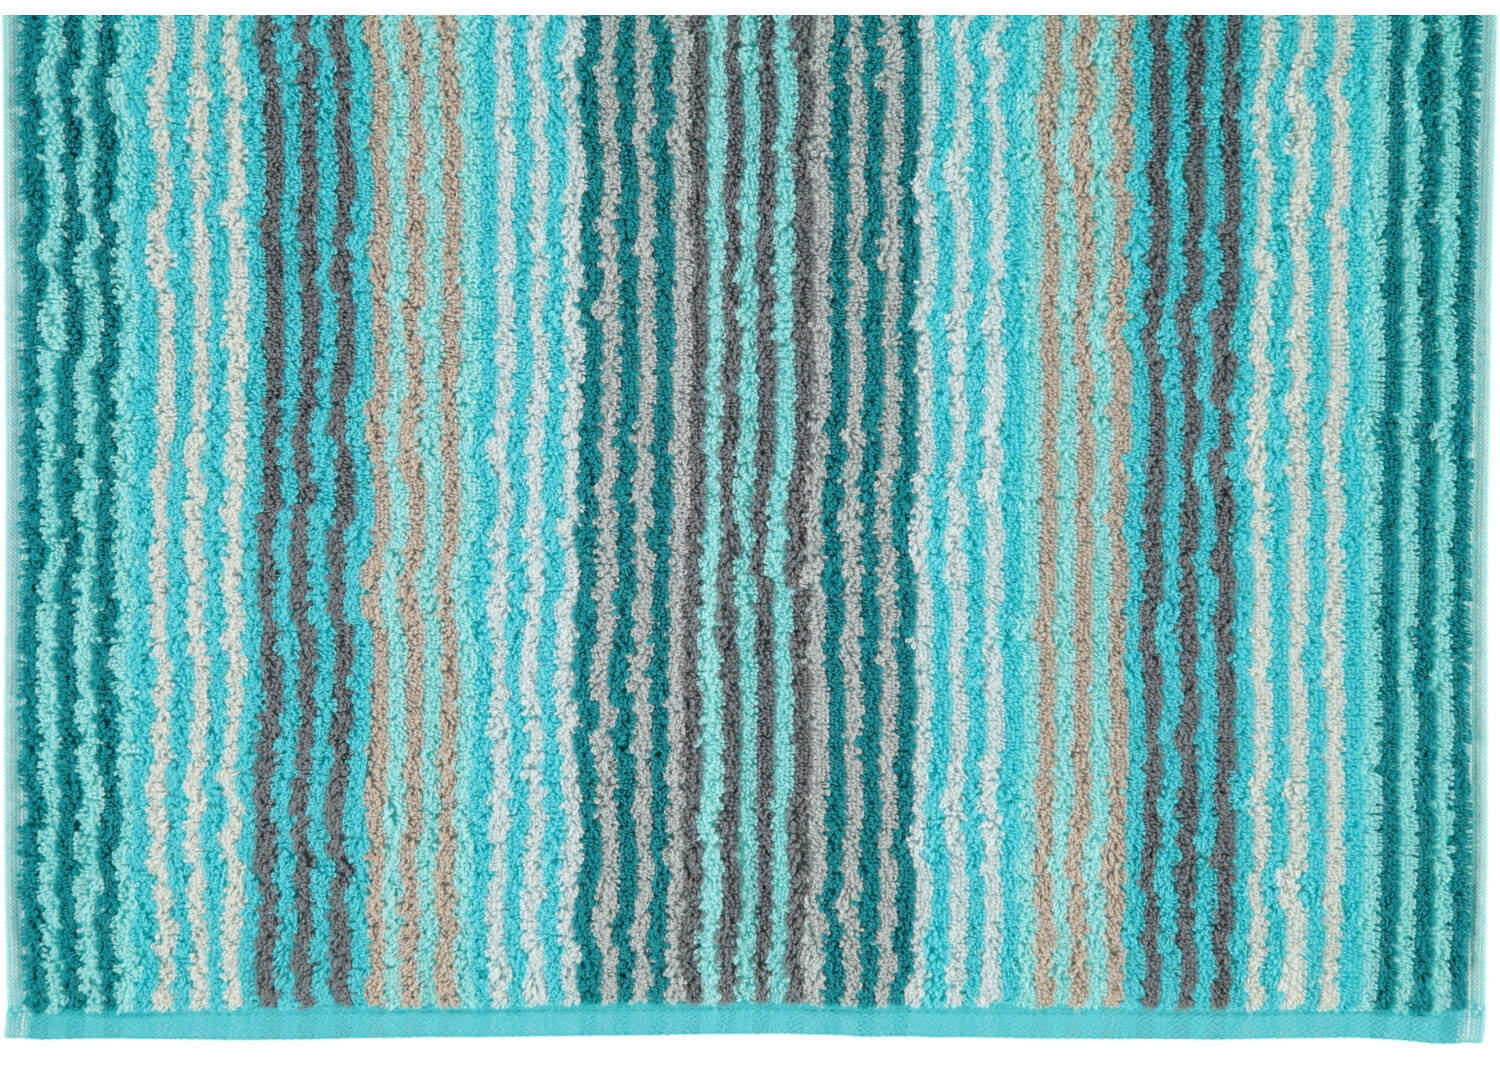 Махровое полотенце Unique Stripes Turkis ☞ Размер: 50 x 100 см